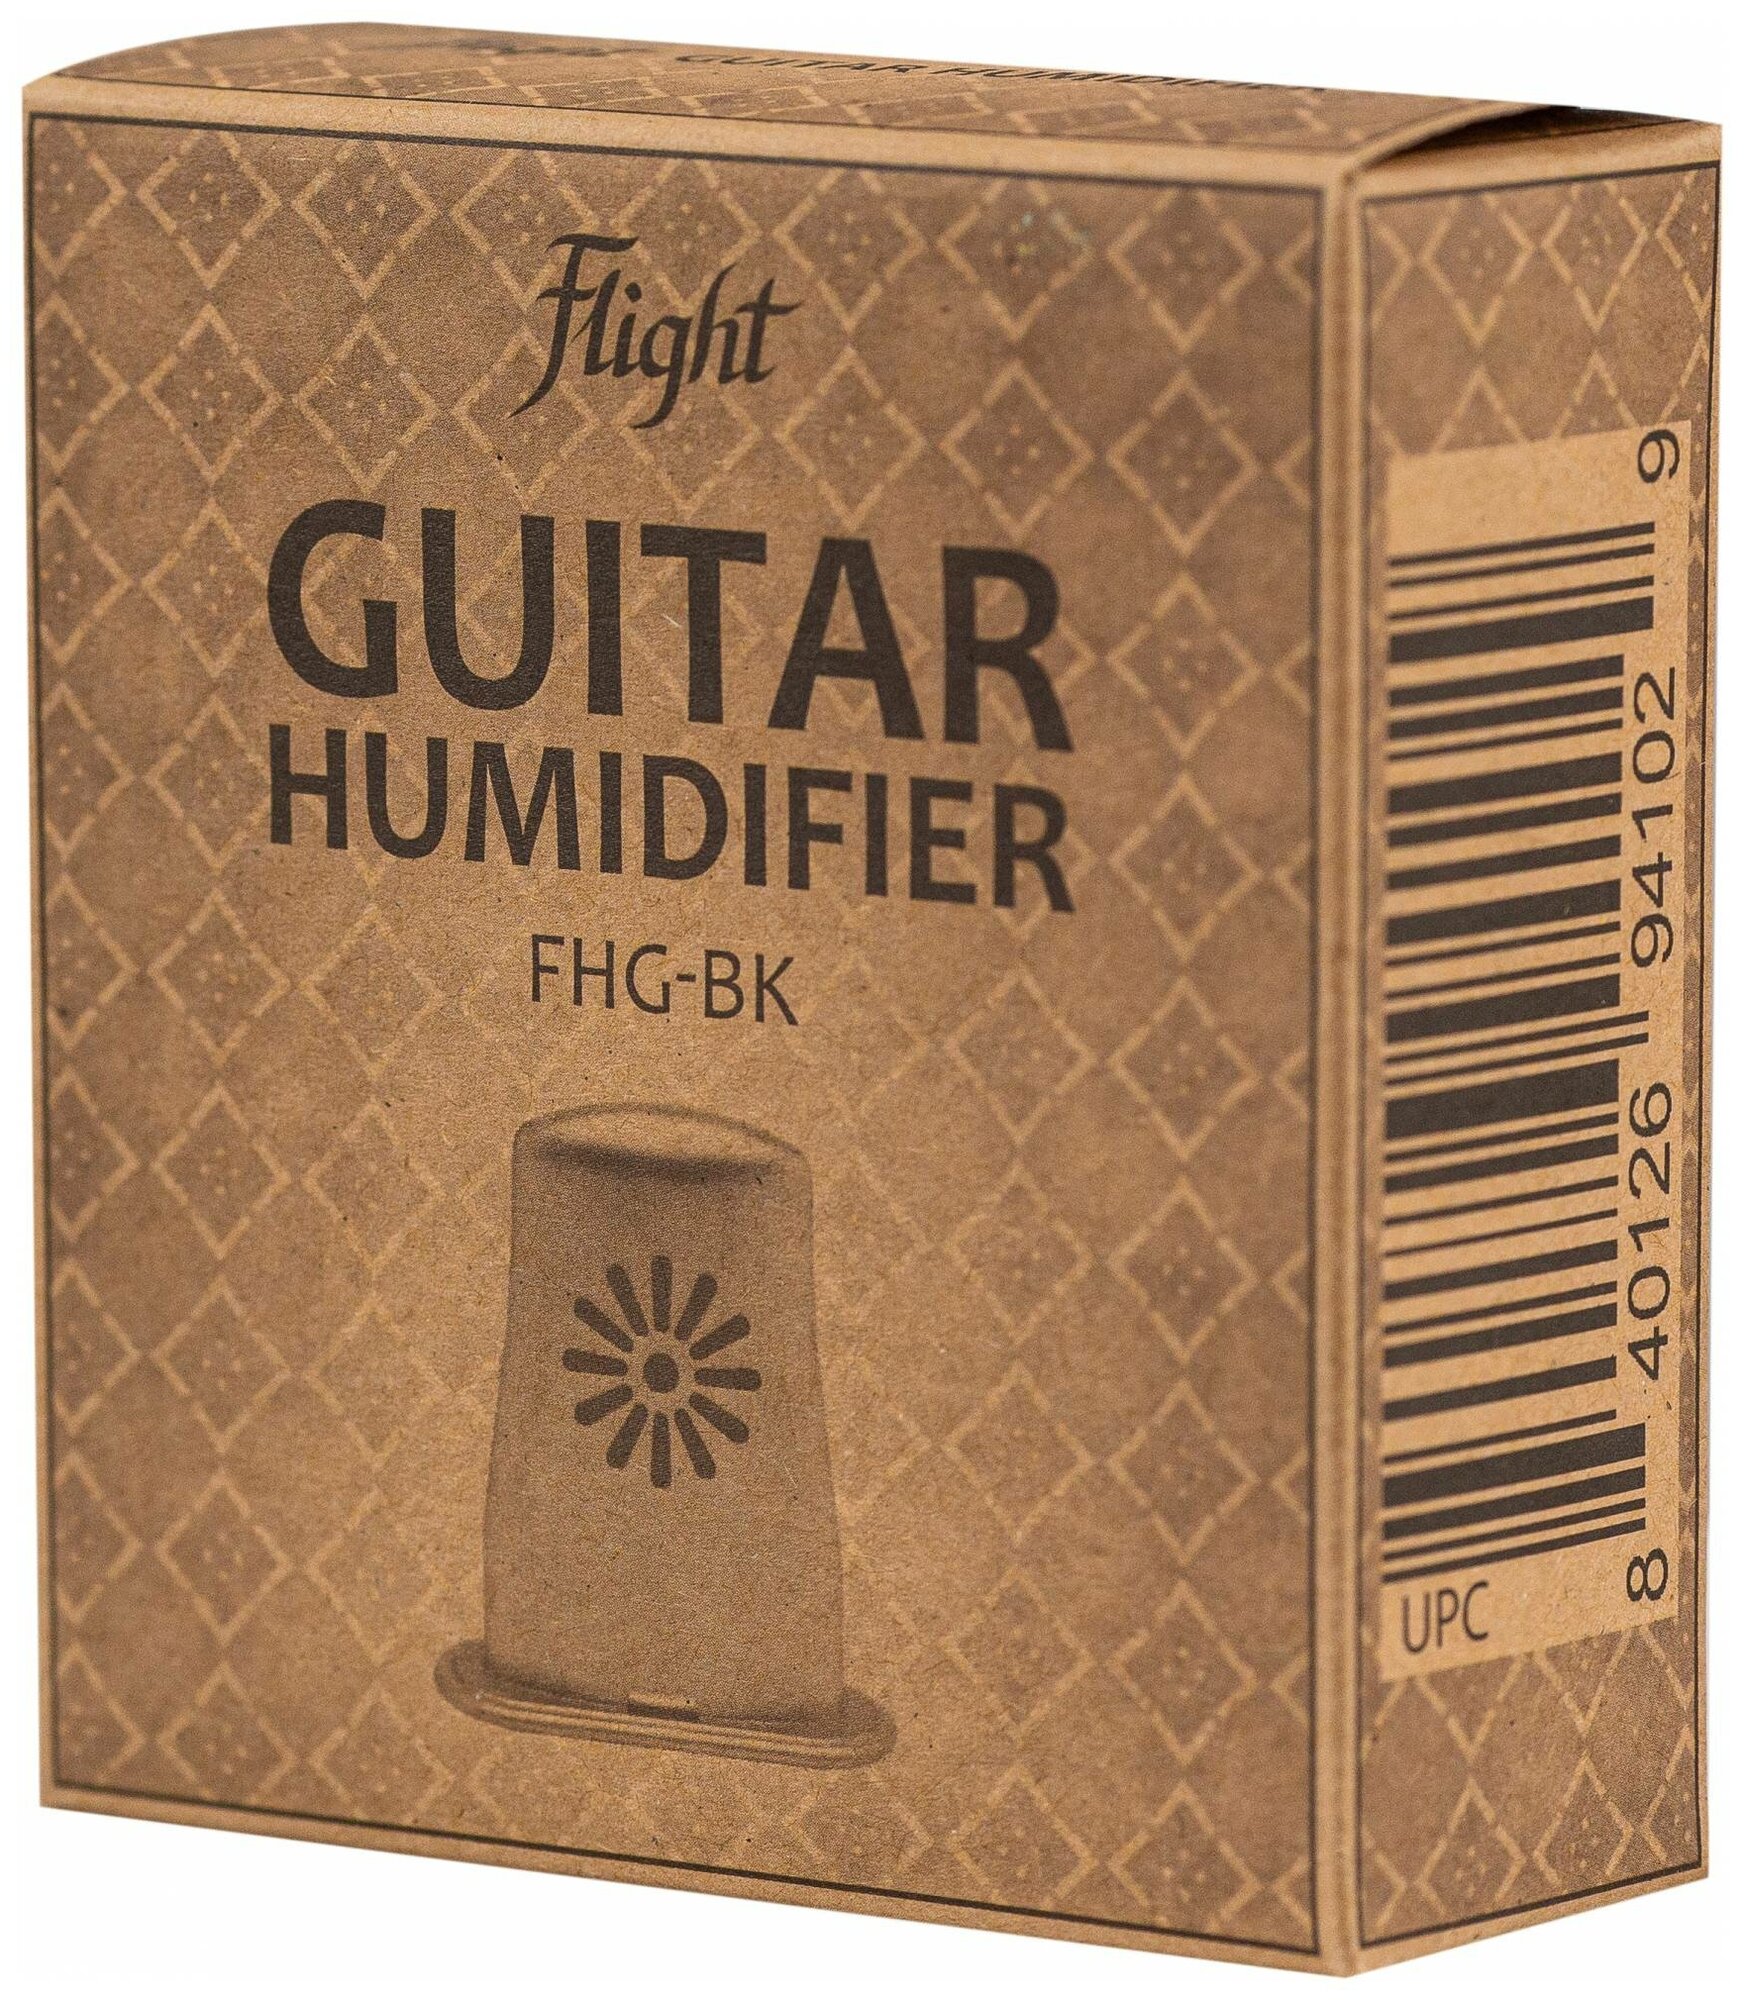 Увлажнитель для гитары Flight FHG-BK, Flight (Флайт)